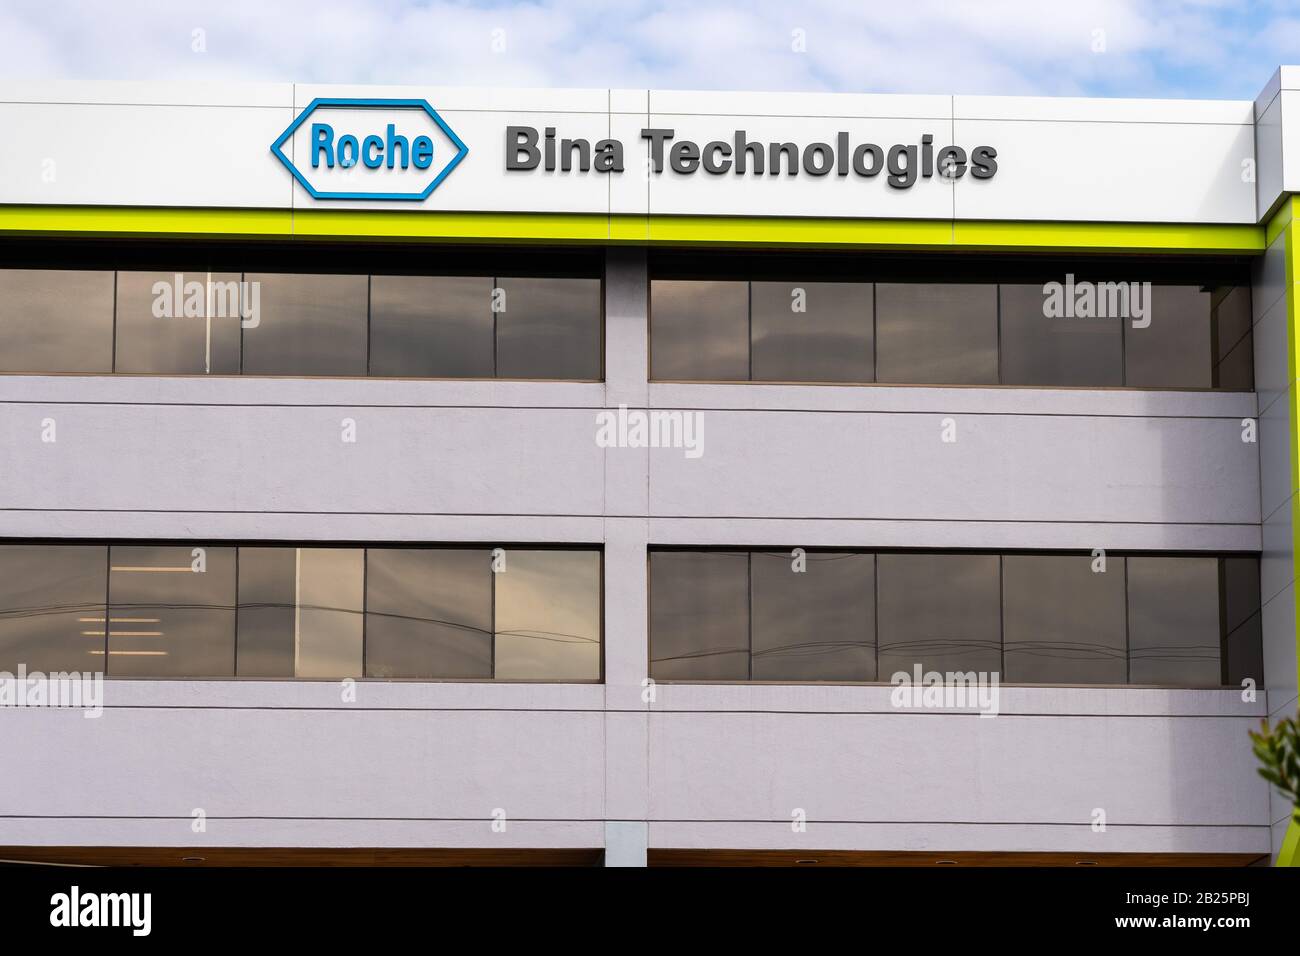 21 febbraio 2020 Belmont / CA / USA - sede di Roche Bina Technologies a Silicon Valley; Parte della divisione Diagnostics di F. Hoffmann-la Roche AG Foto Stock